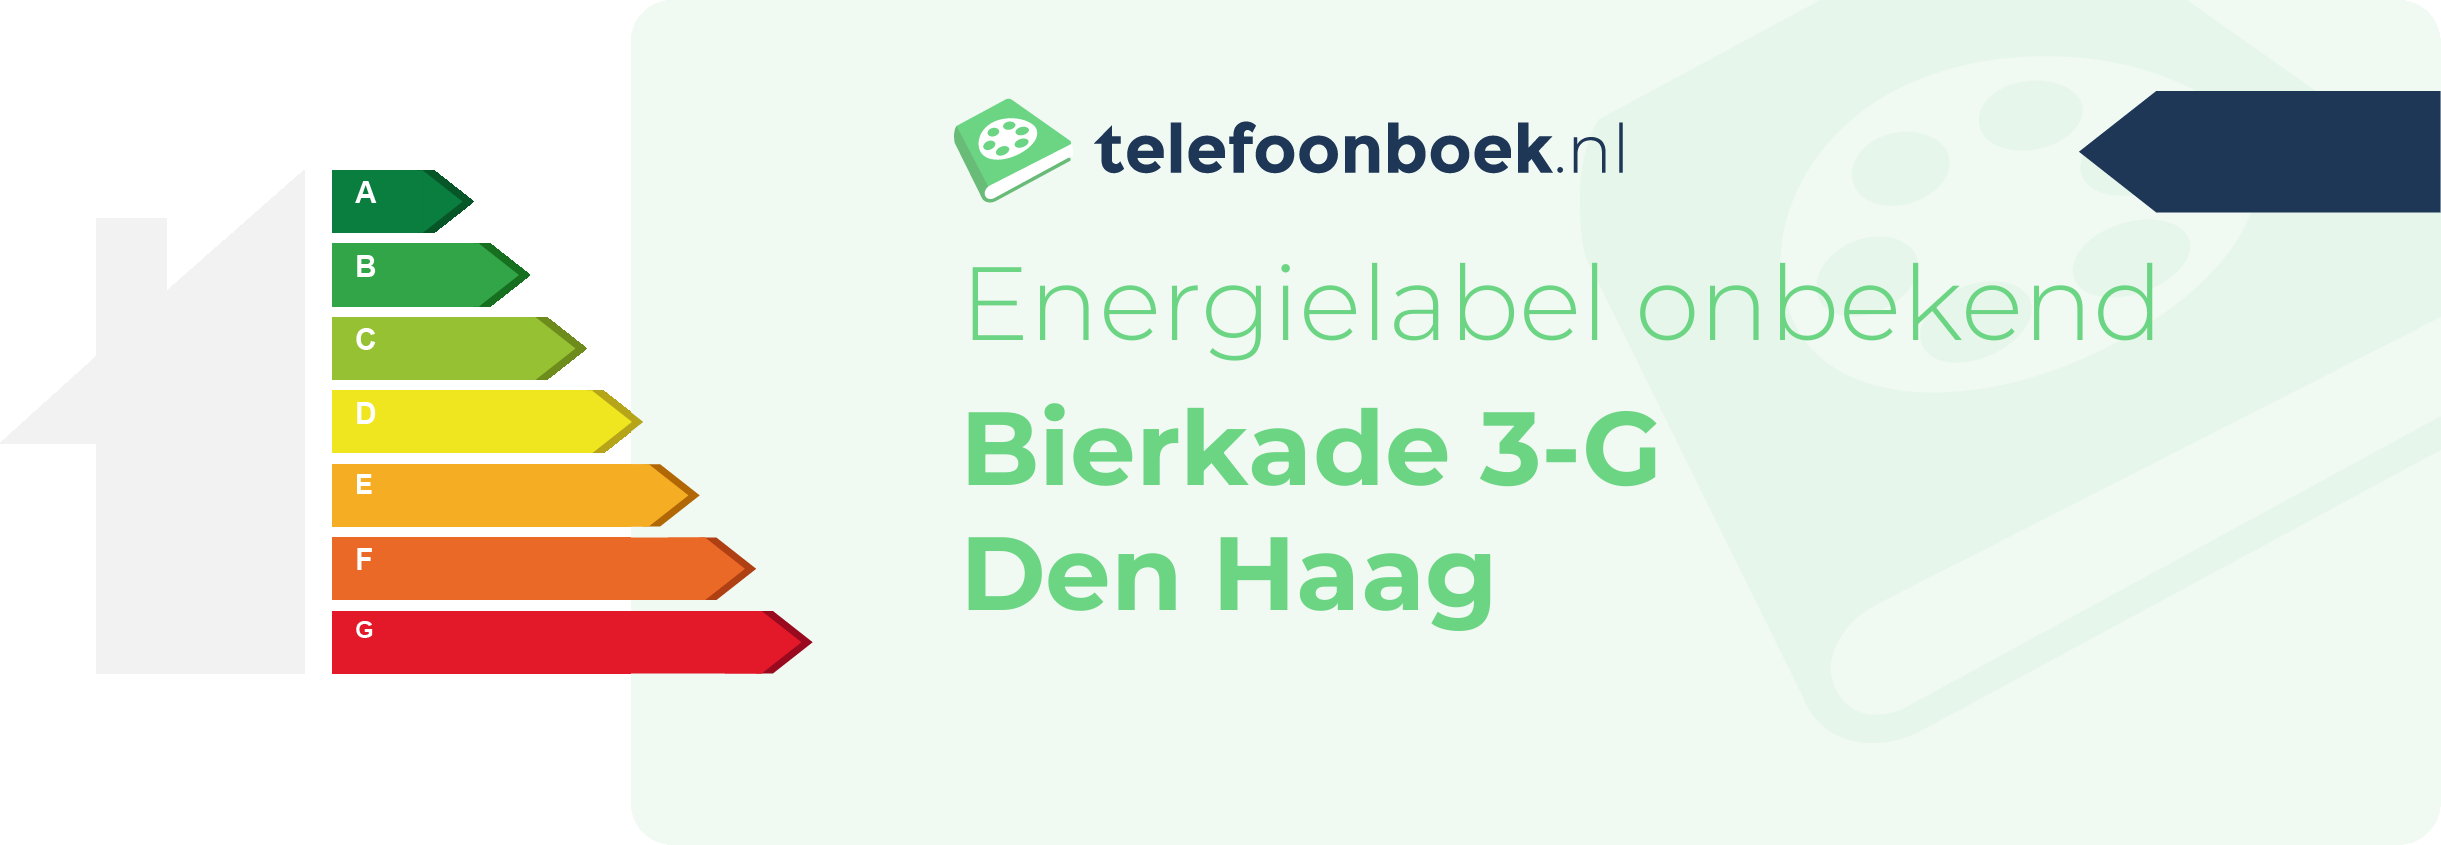 Energielabel Bierkade 3-G Den Haag